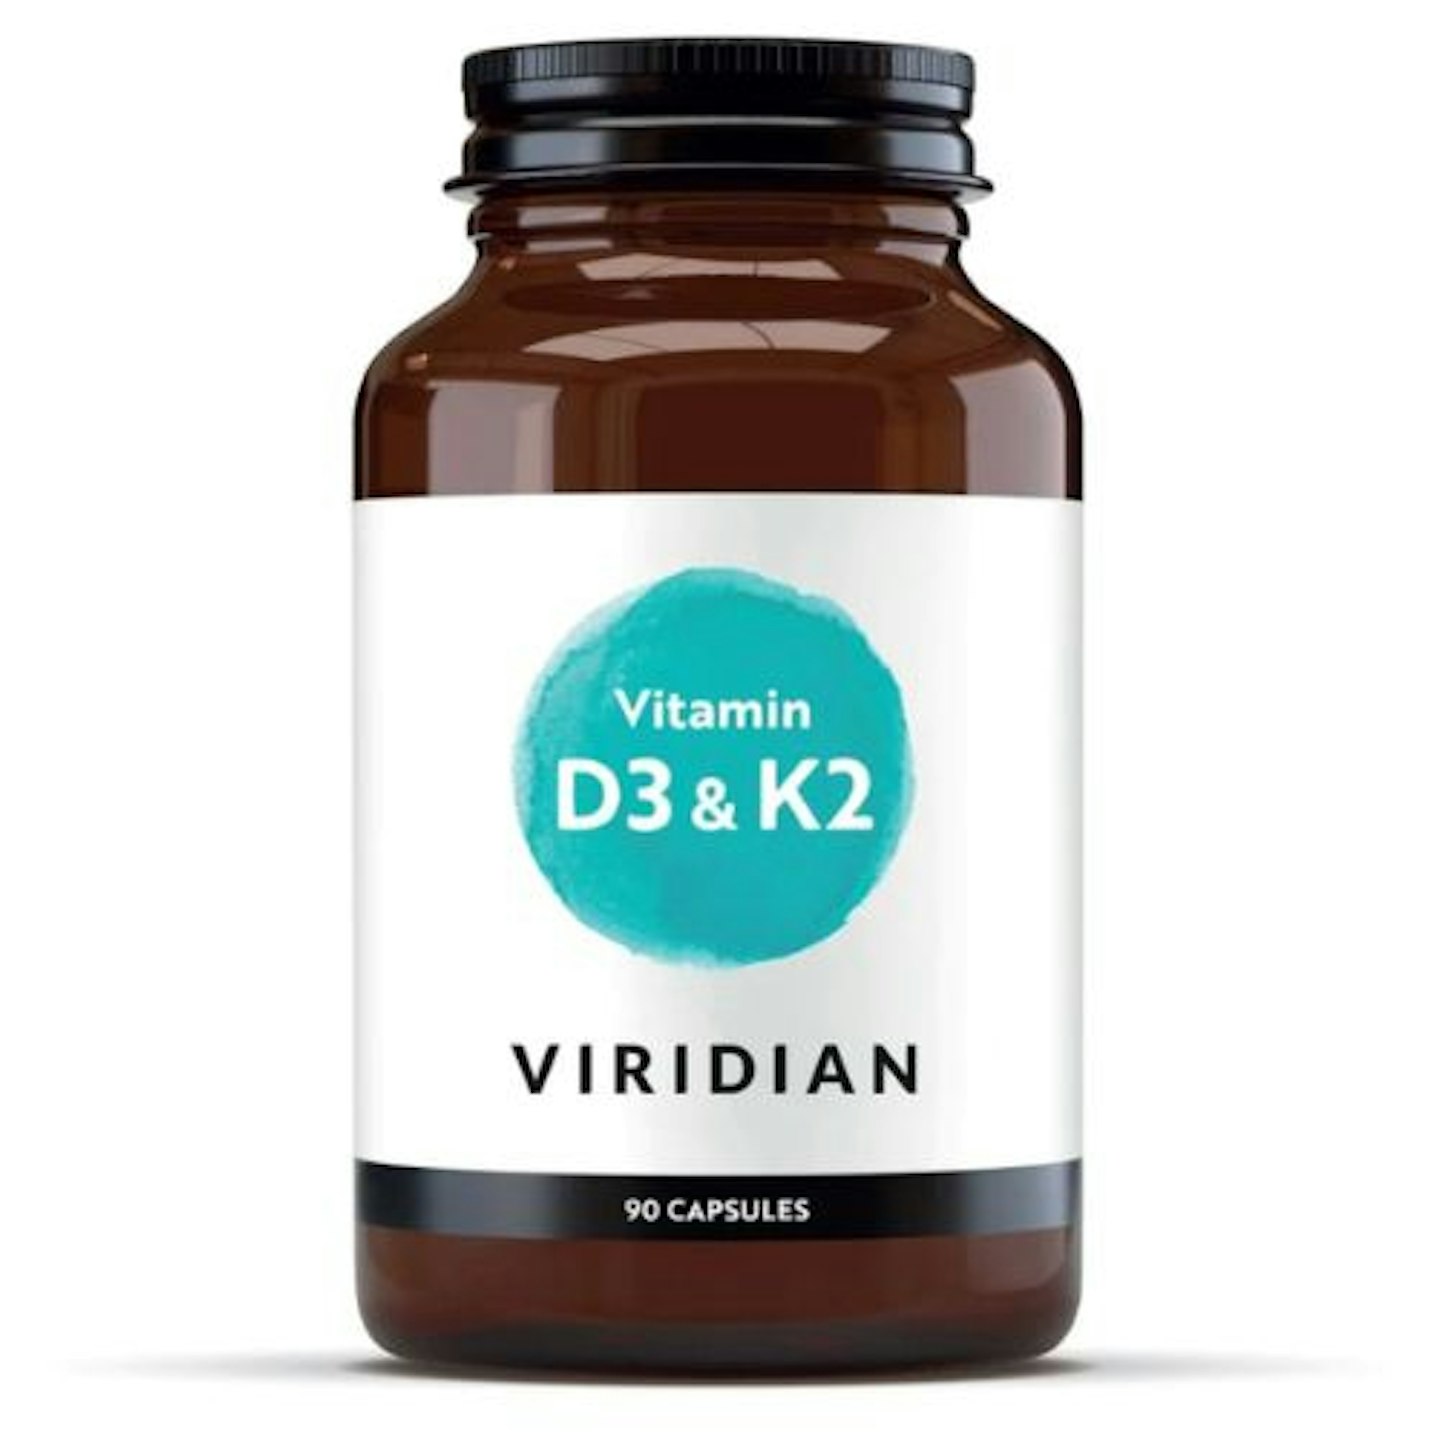 Viridian Vitamin D3 & K2 - 90 Capsules